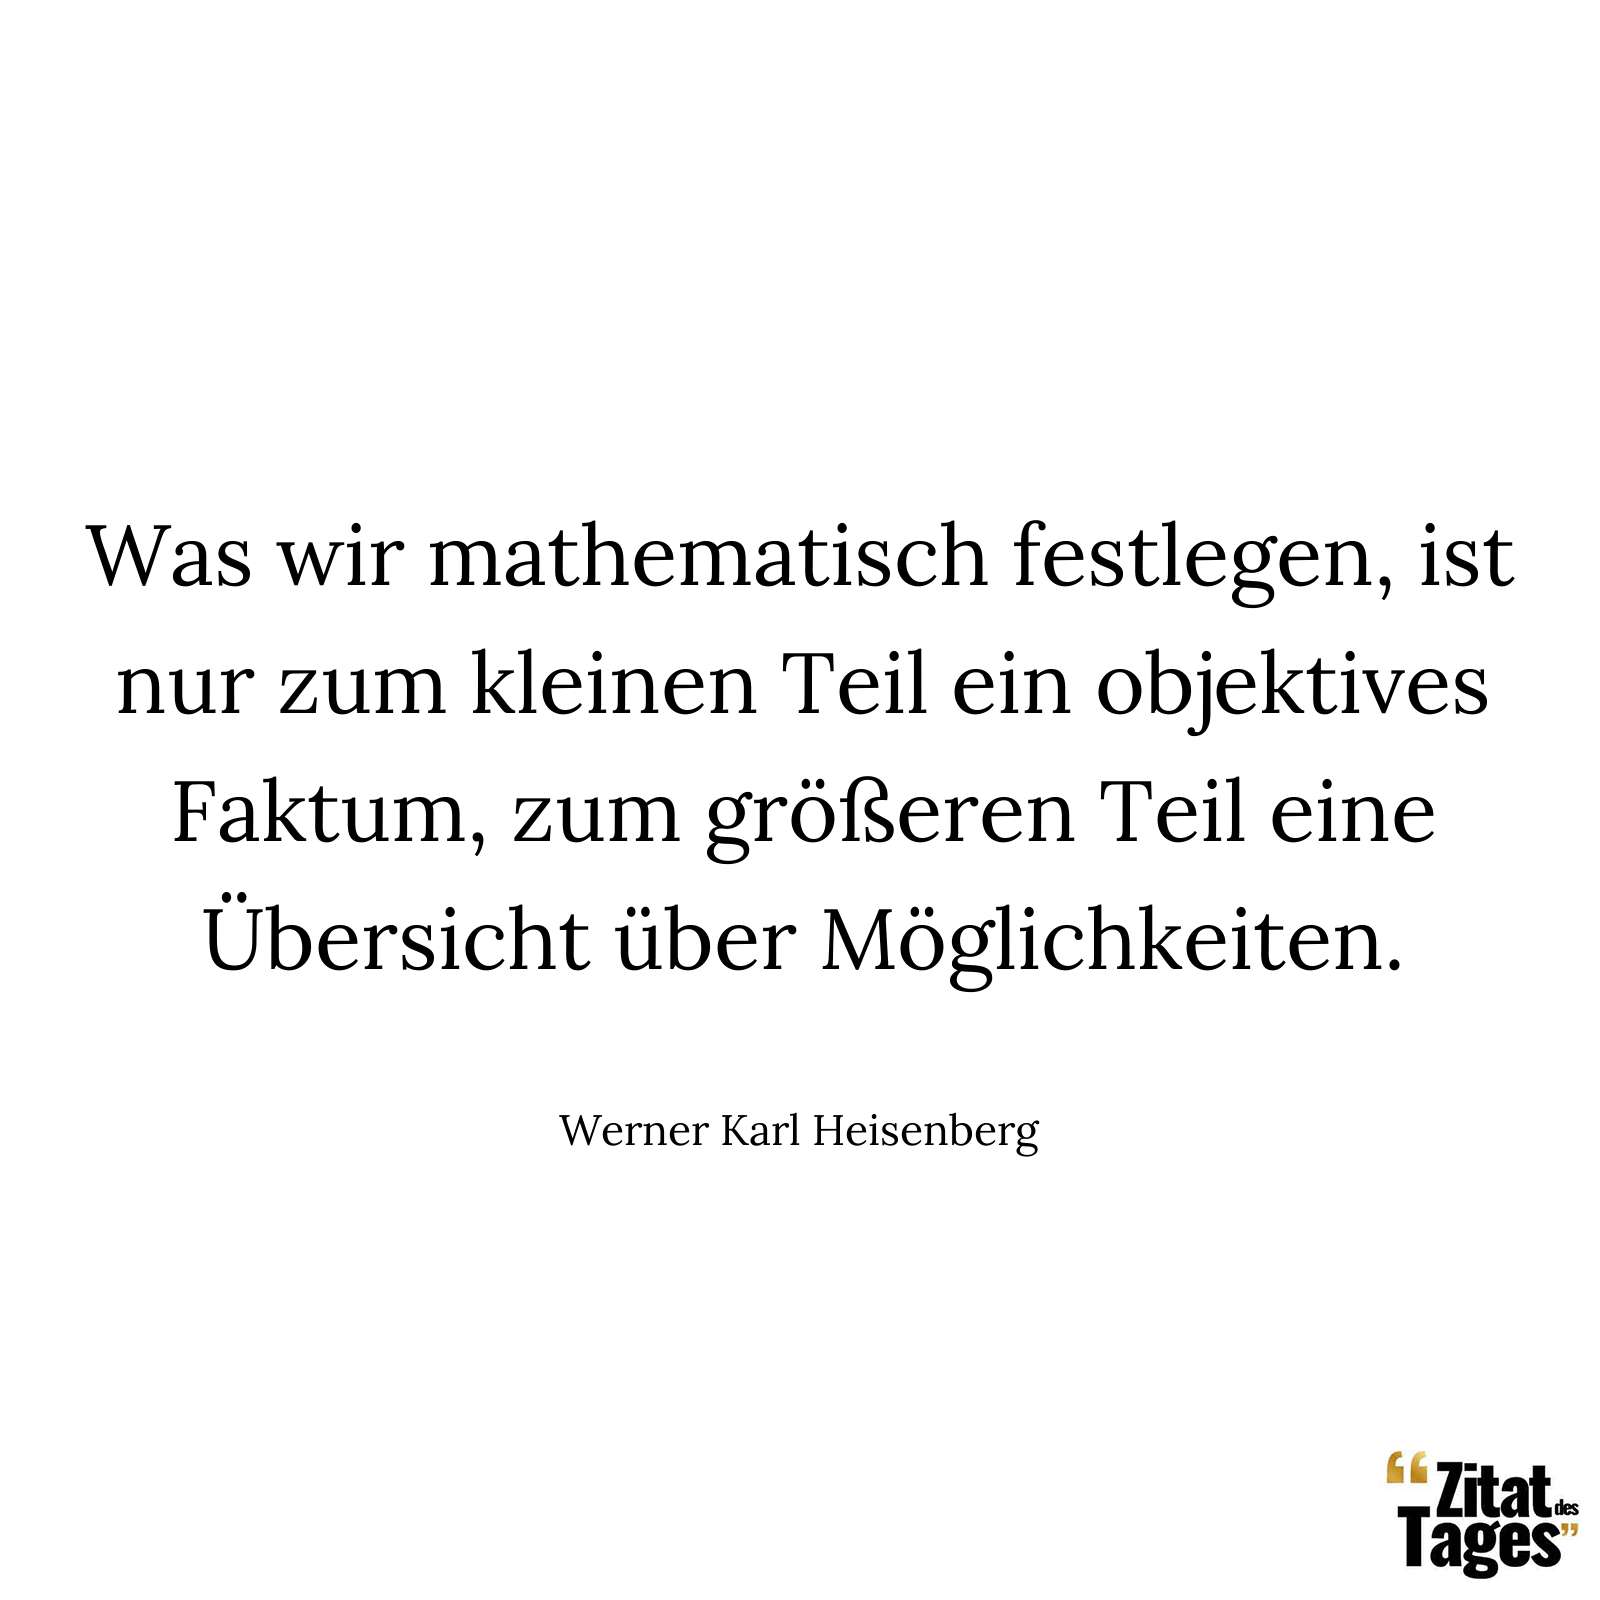 Was wir mathematisch festlegen, ist nur zum kleinen Teil ein objektives Faktum, zum größeren Teil eine Übersicht über Möglichkeiten. - Werner Karl Heisenberg